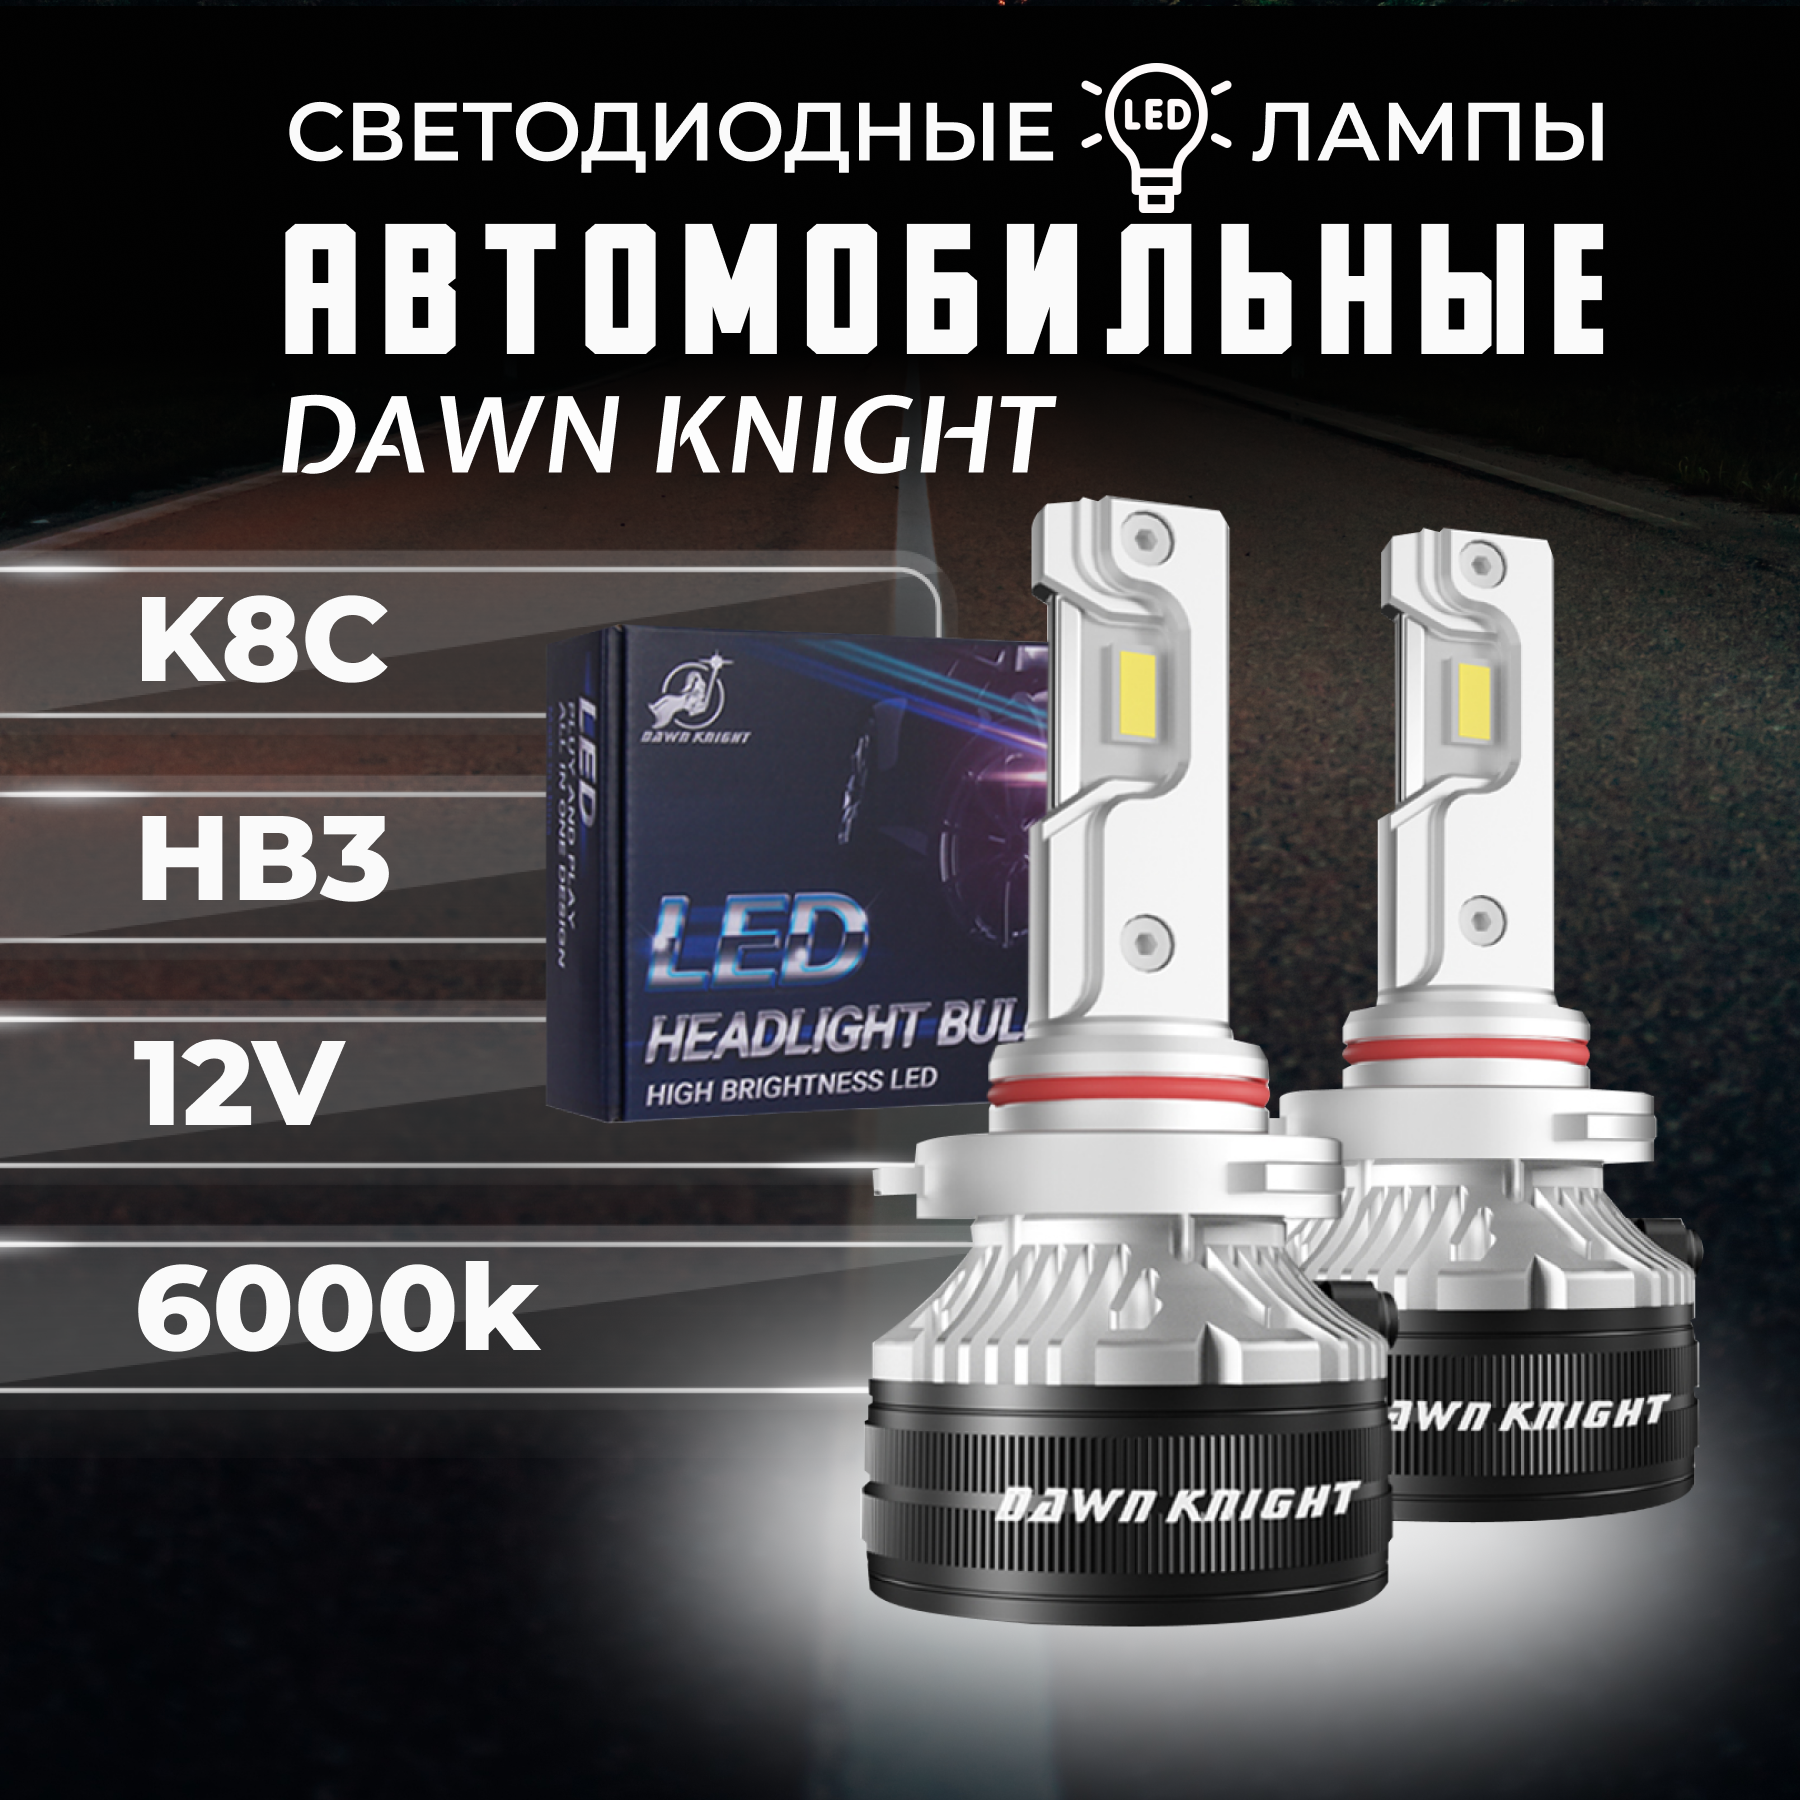 K8C HB3 светодиодные авто лампы 6000K DAWNKNIGHT 80W/Обновление K7C/ 12v 2шт в компл. / Длительный срок службы